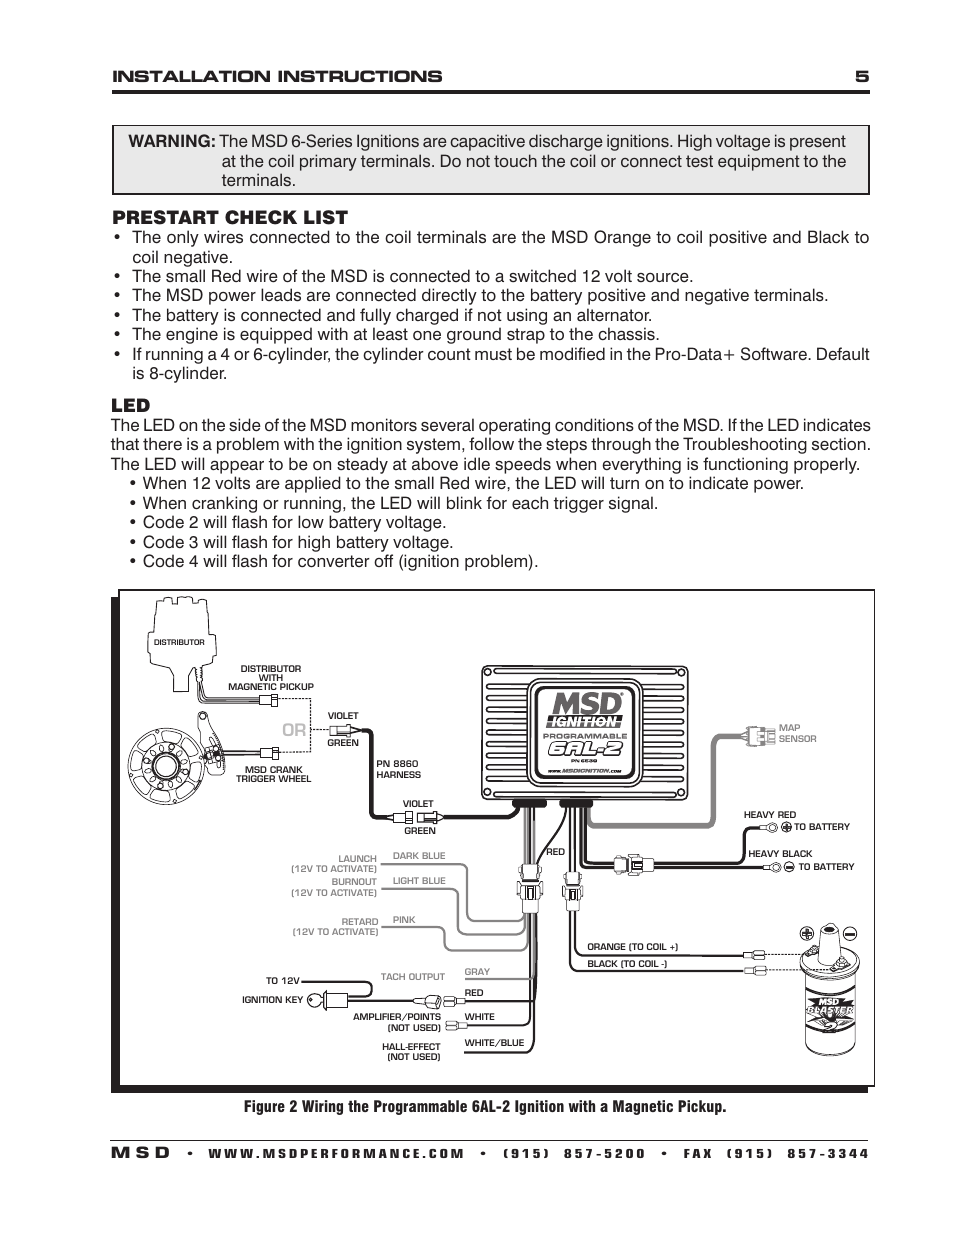 Prestart check list, Installation instructions 5 m s d | MSD 6530 Digital Programmable 6AL-2 Installation User Manual | Page 5 / 20